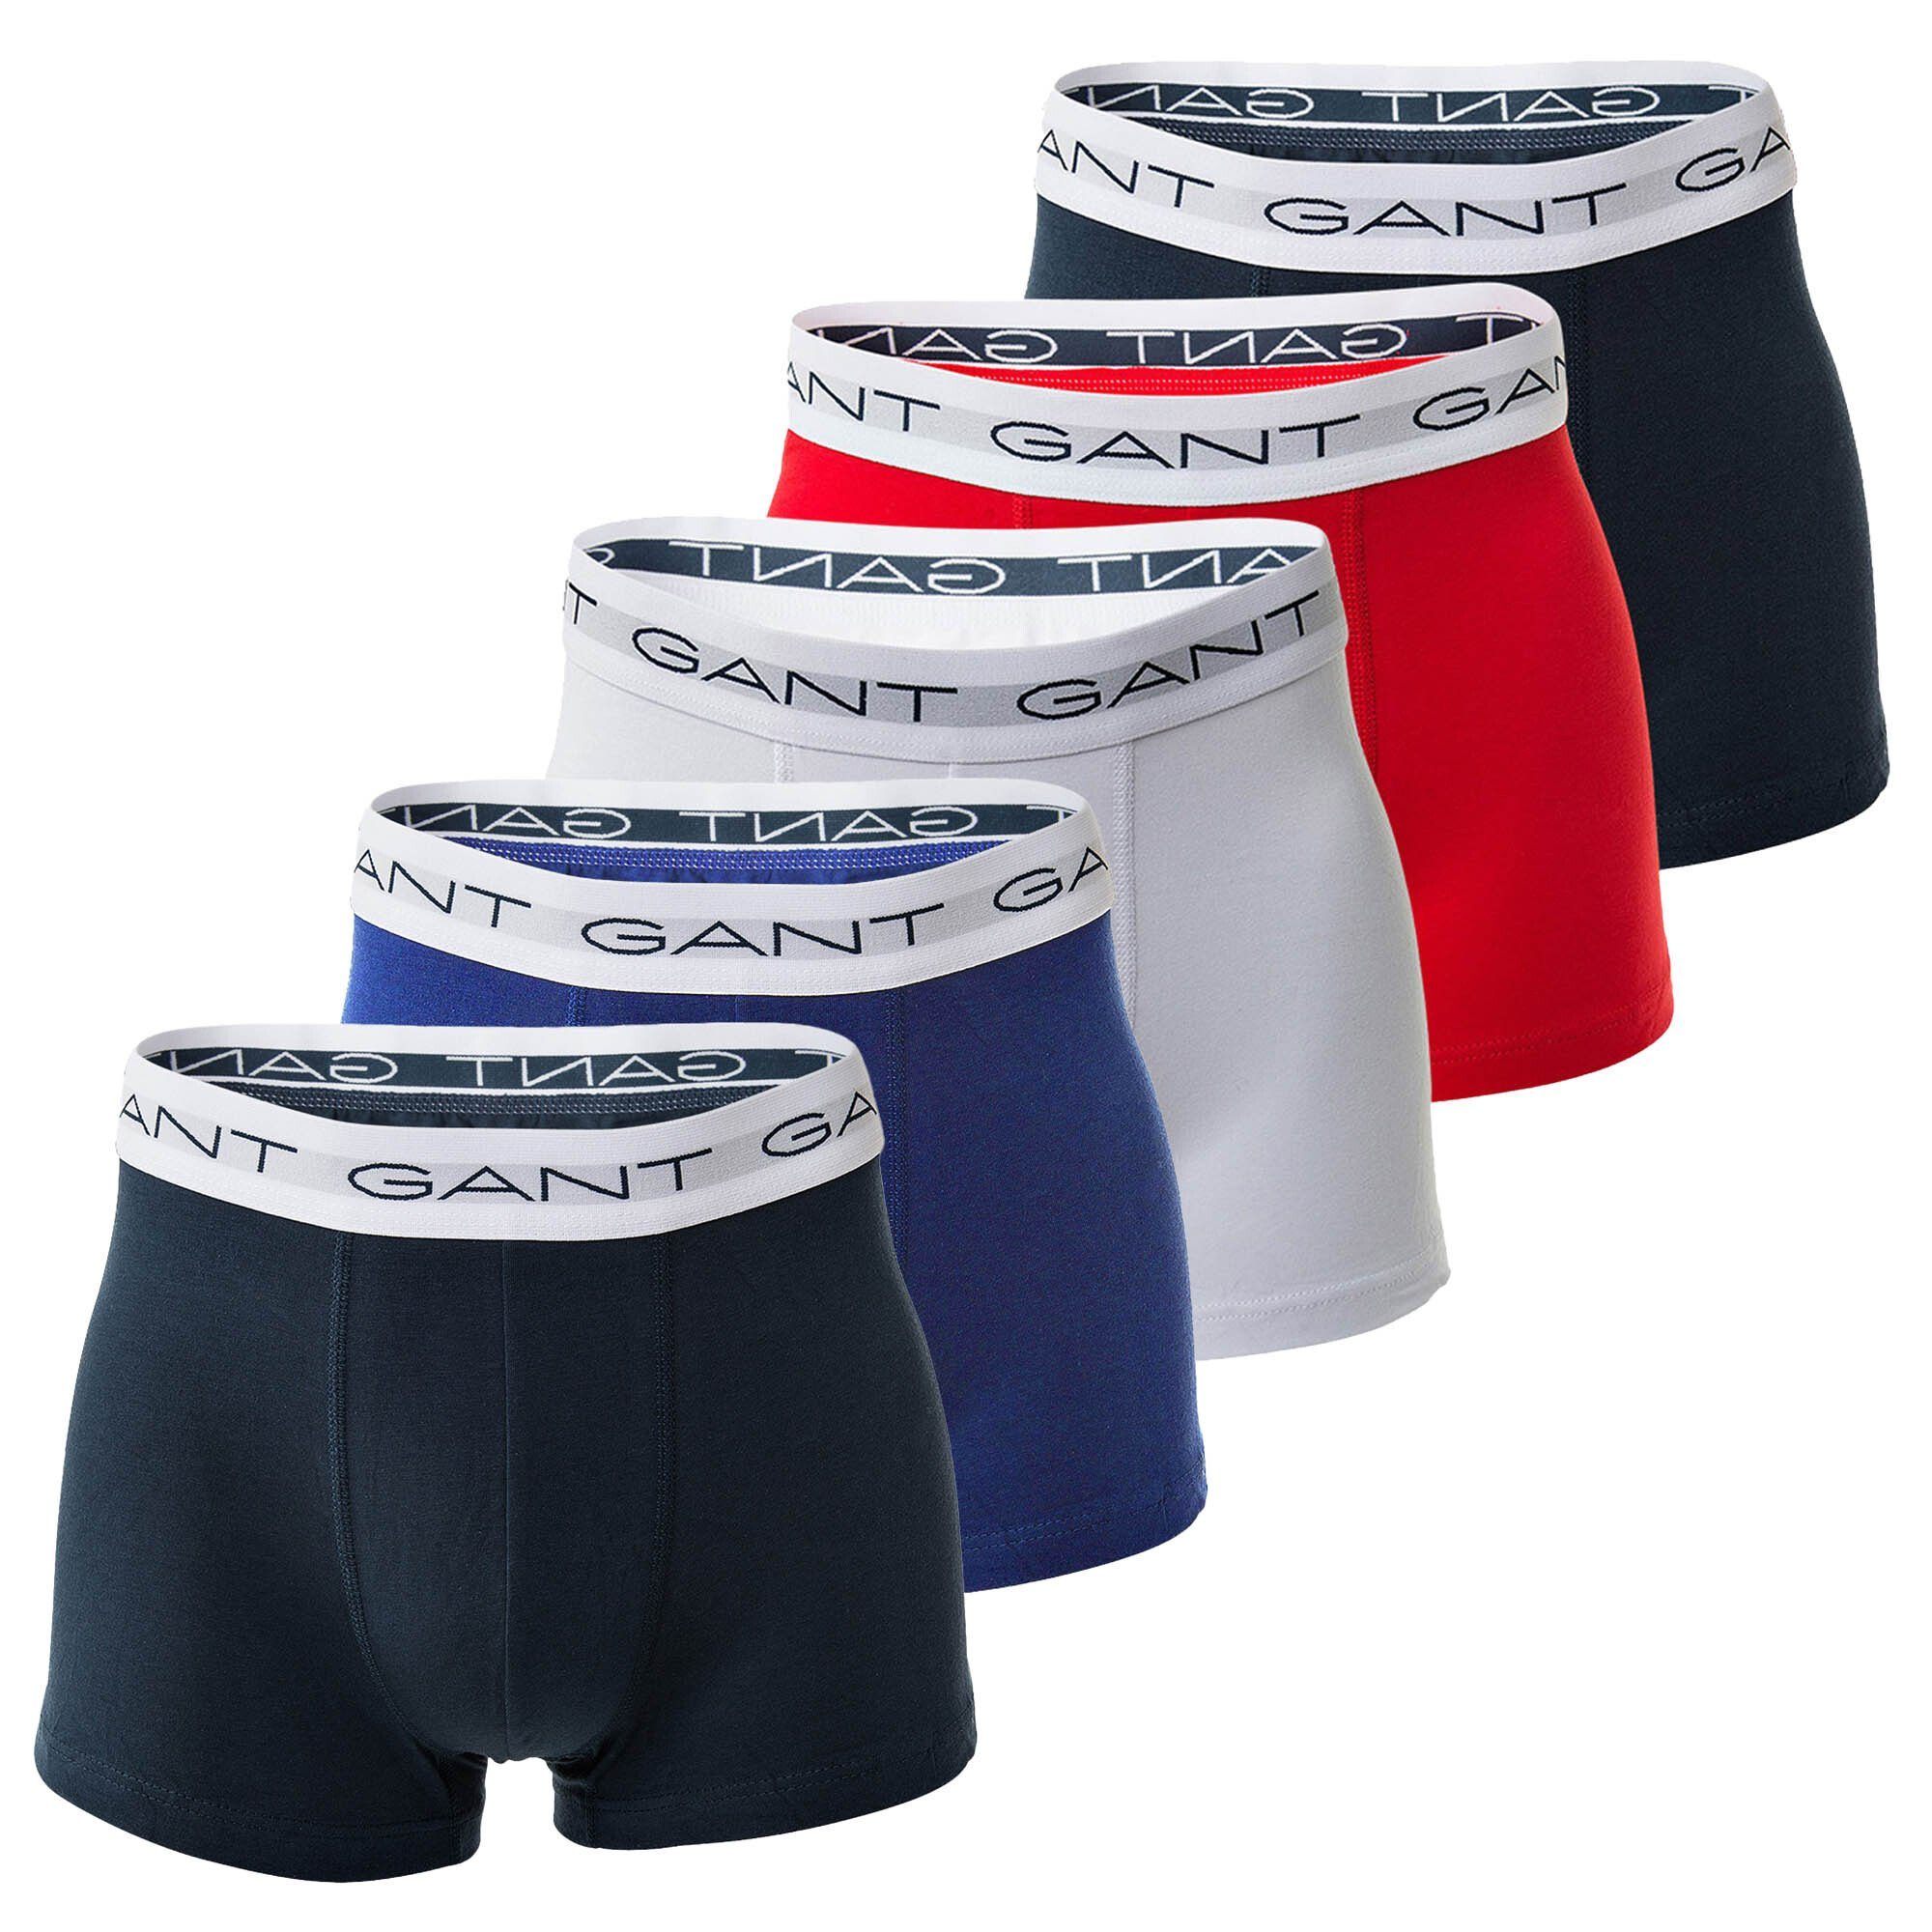 Gant Boxer Herren Boxershorts, 5er Pack - Basic Trunks Mehrfarbig